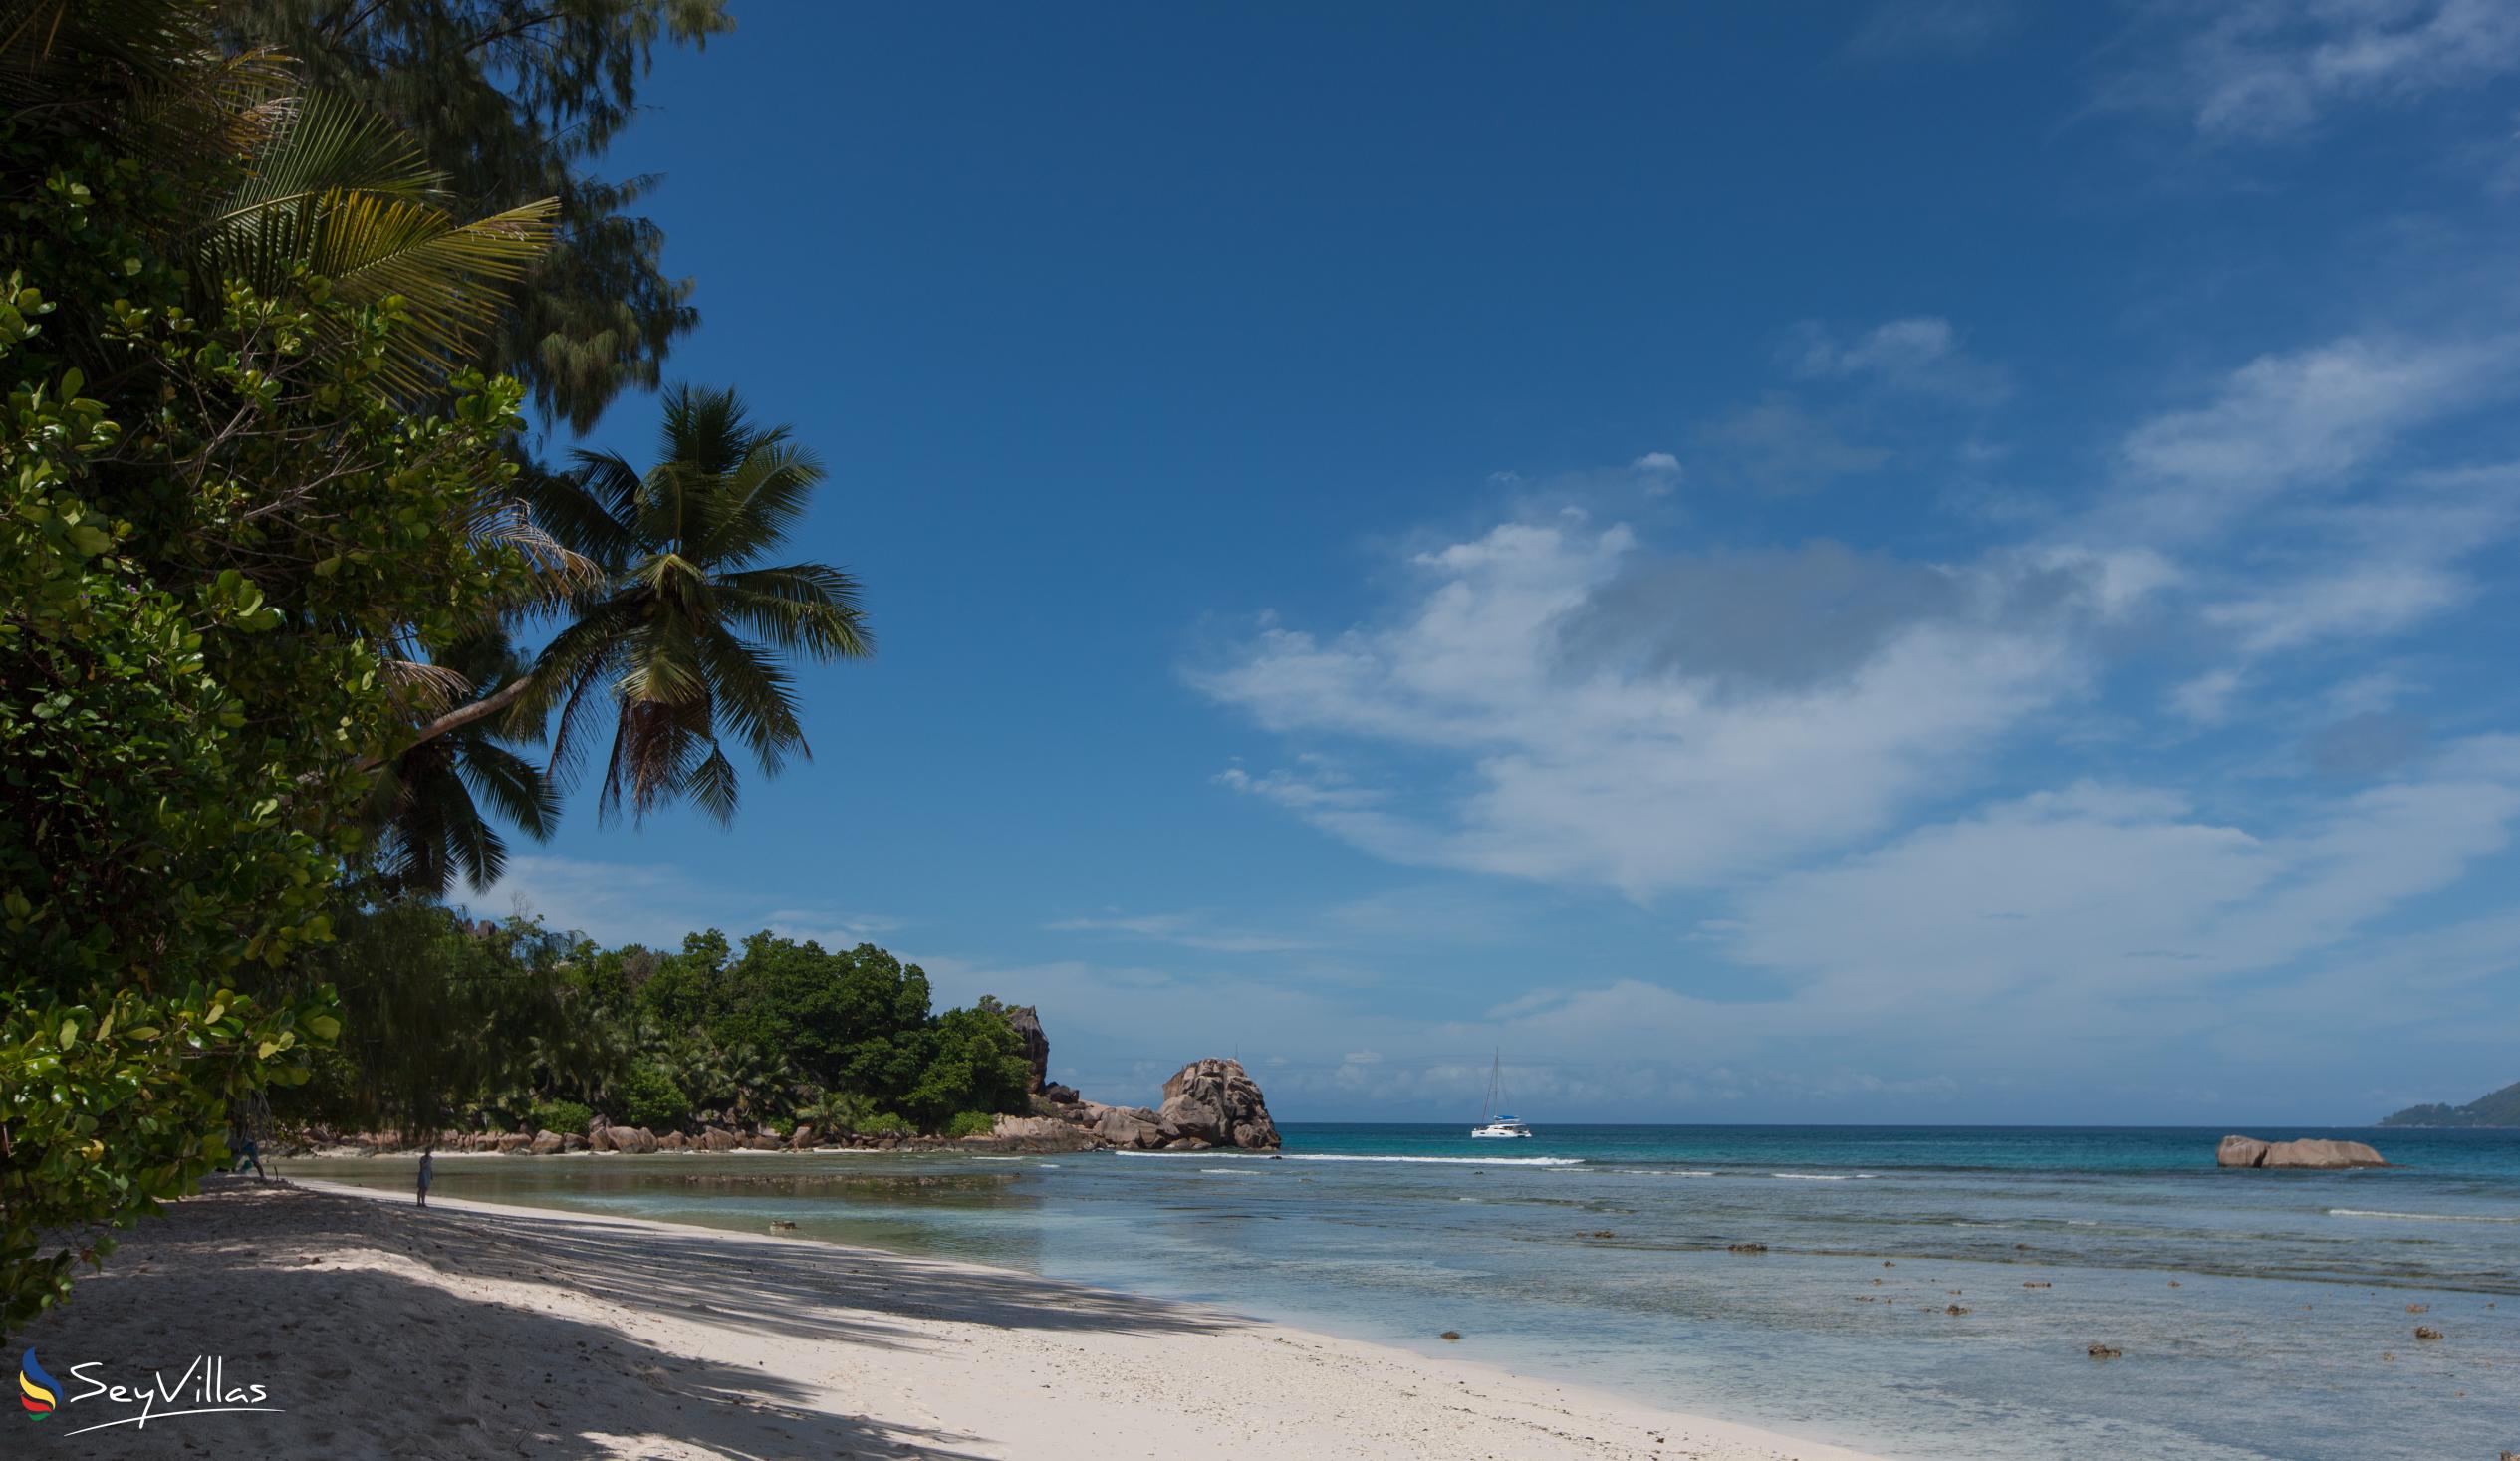 Foto 32: Anse Severe Beach Villa - Posizione - La Digue (Seychelles)